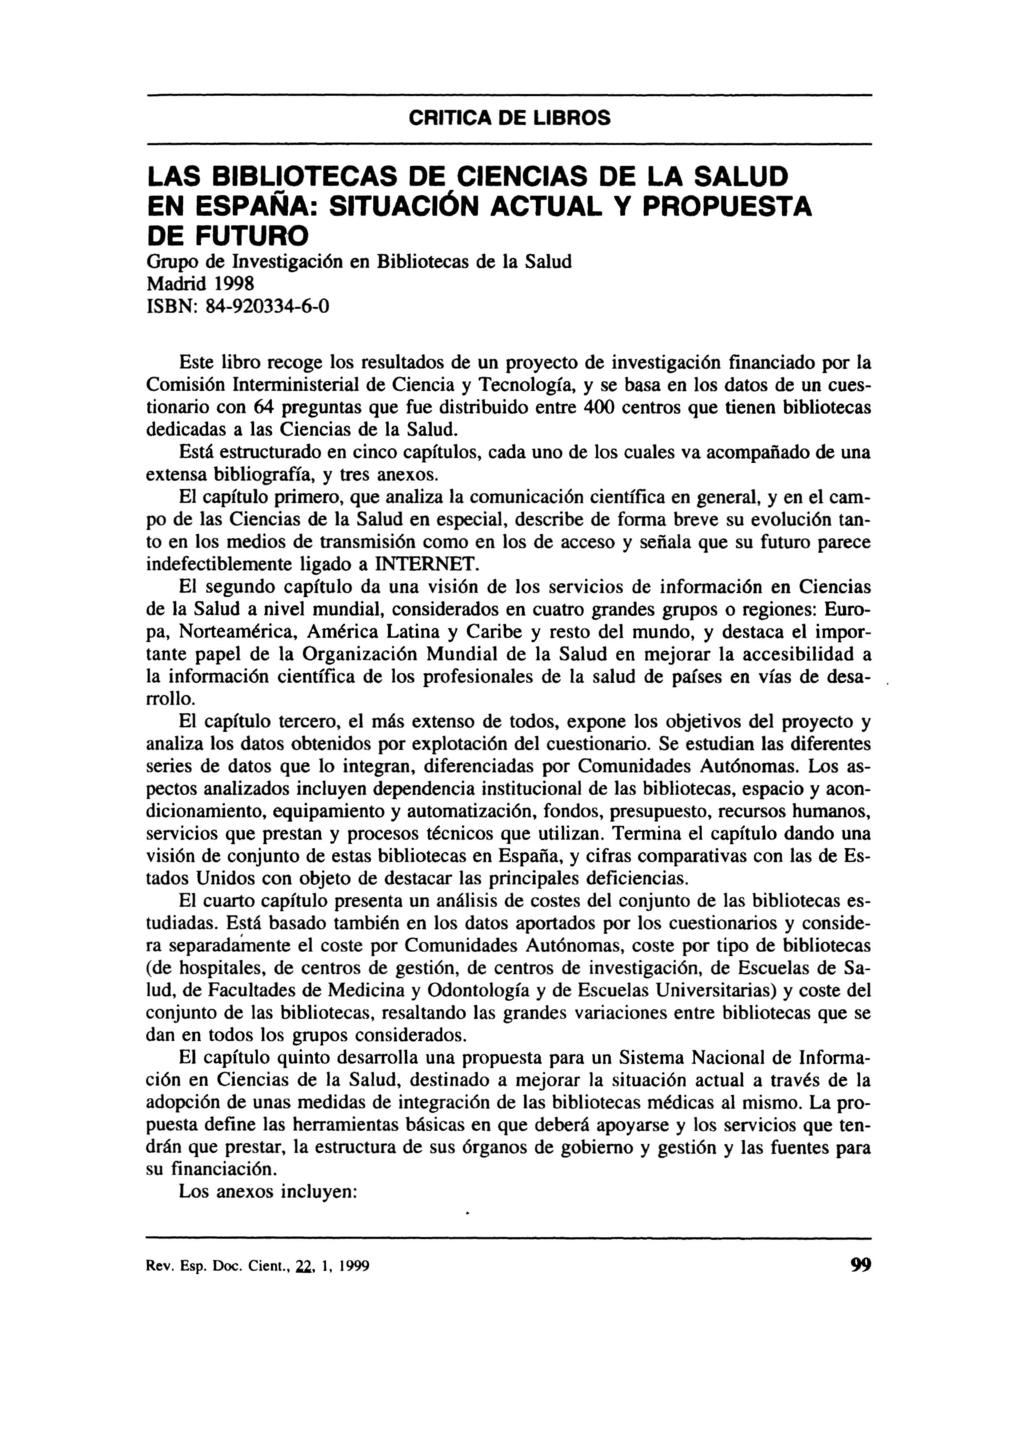 CRITICA DE LIBROS LAS BIBLIOTECAS DE CIENCIAS DE LA SALUD EN ESPAÑA: SITUACiÓN ACTUAL Y PROPUESTA DE FUTURO Grupo de Investigación en Bibliotecas de la Salud Madrid 1998 ISBN: 84-920334-6-0 Este